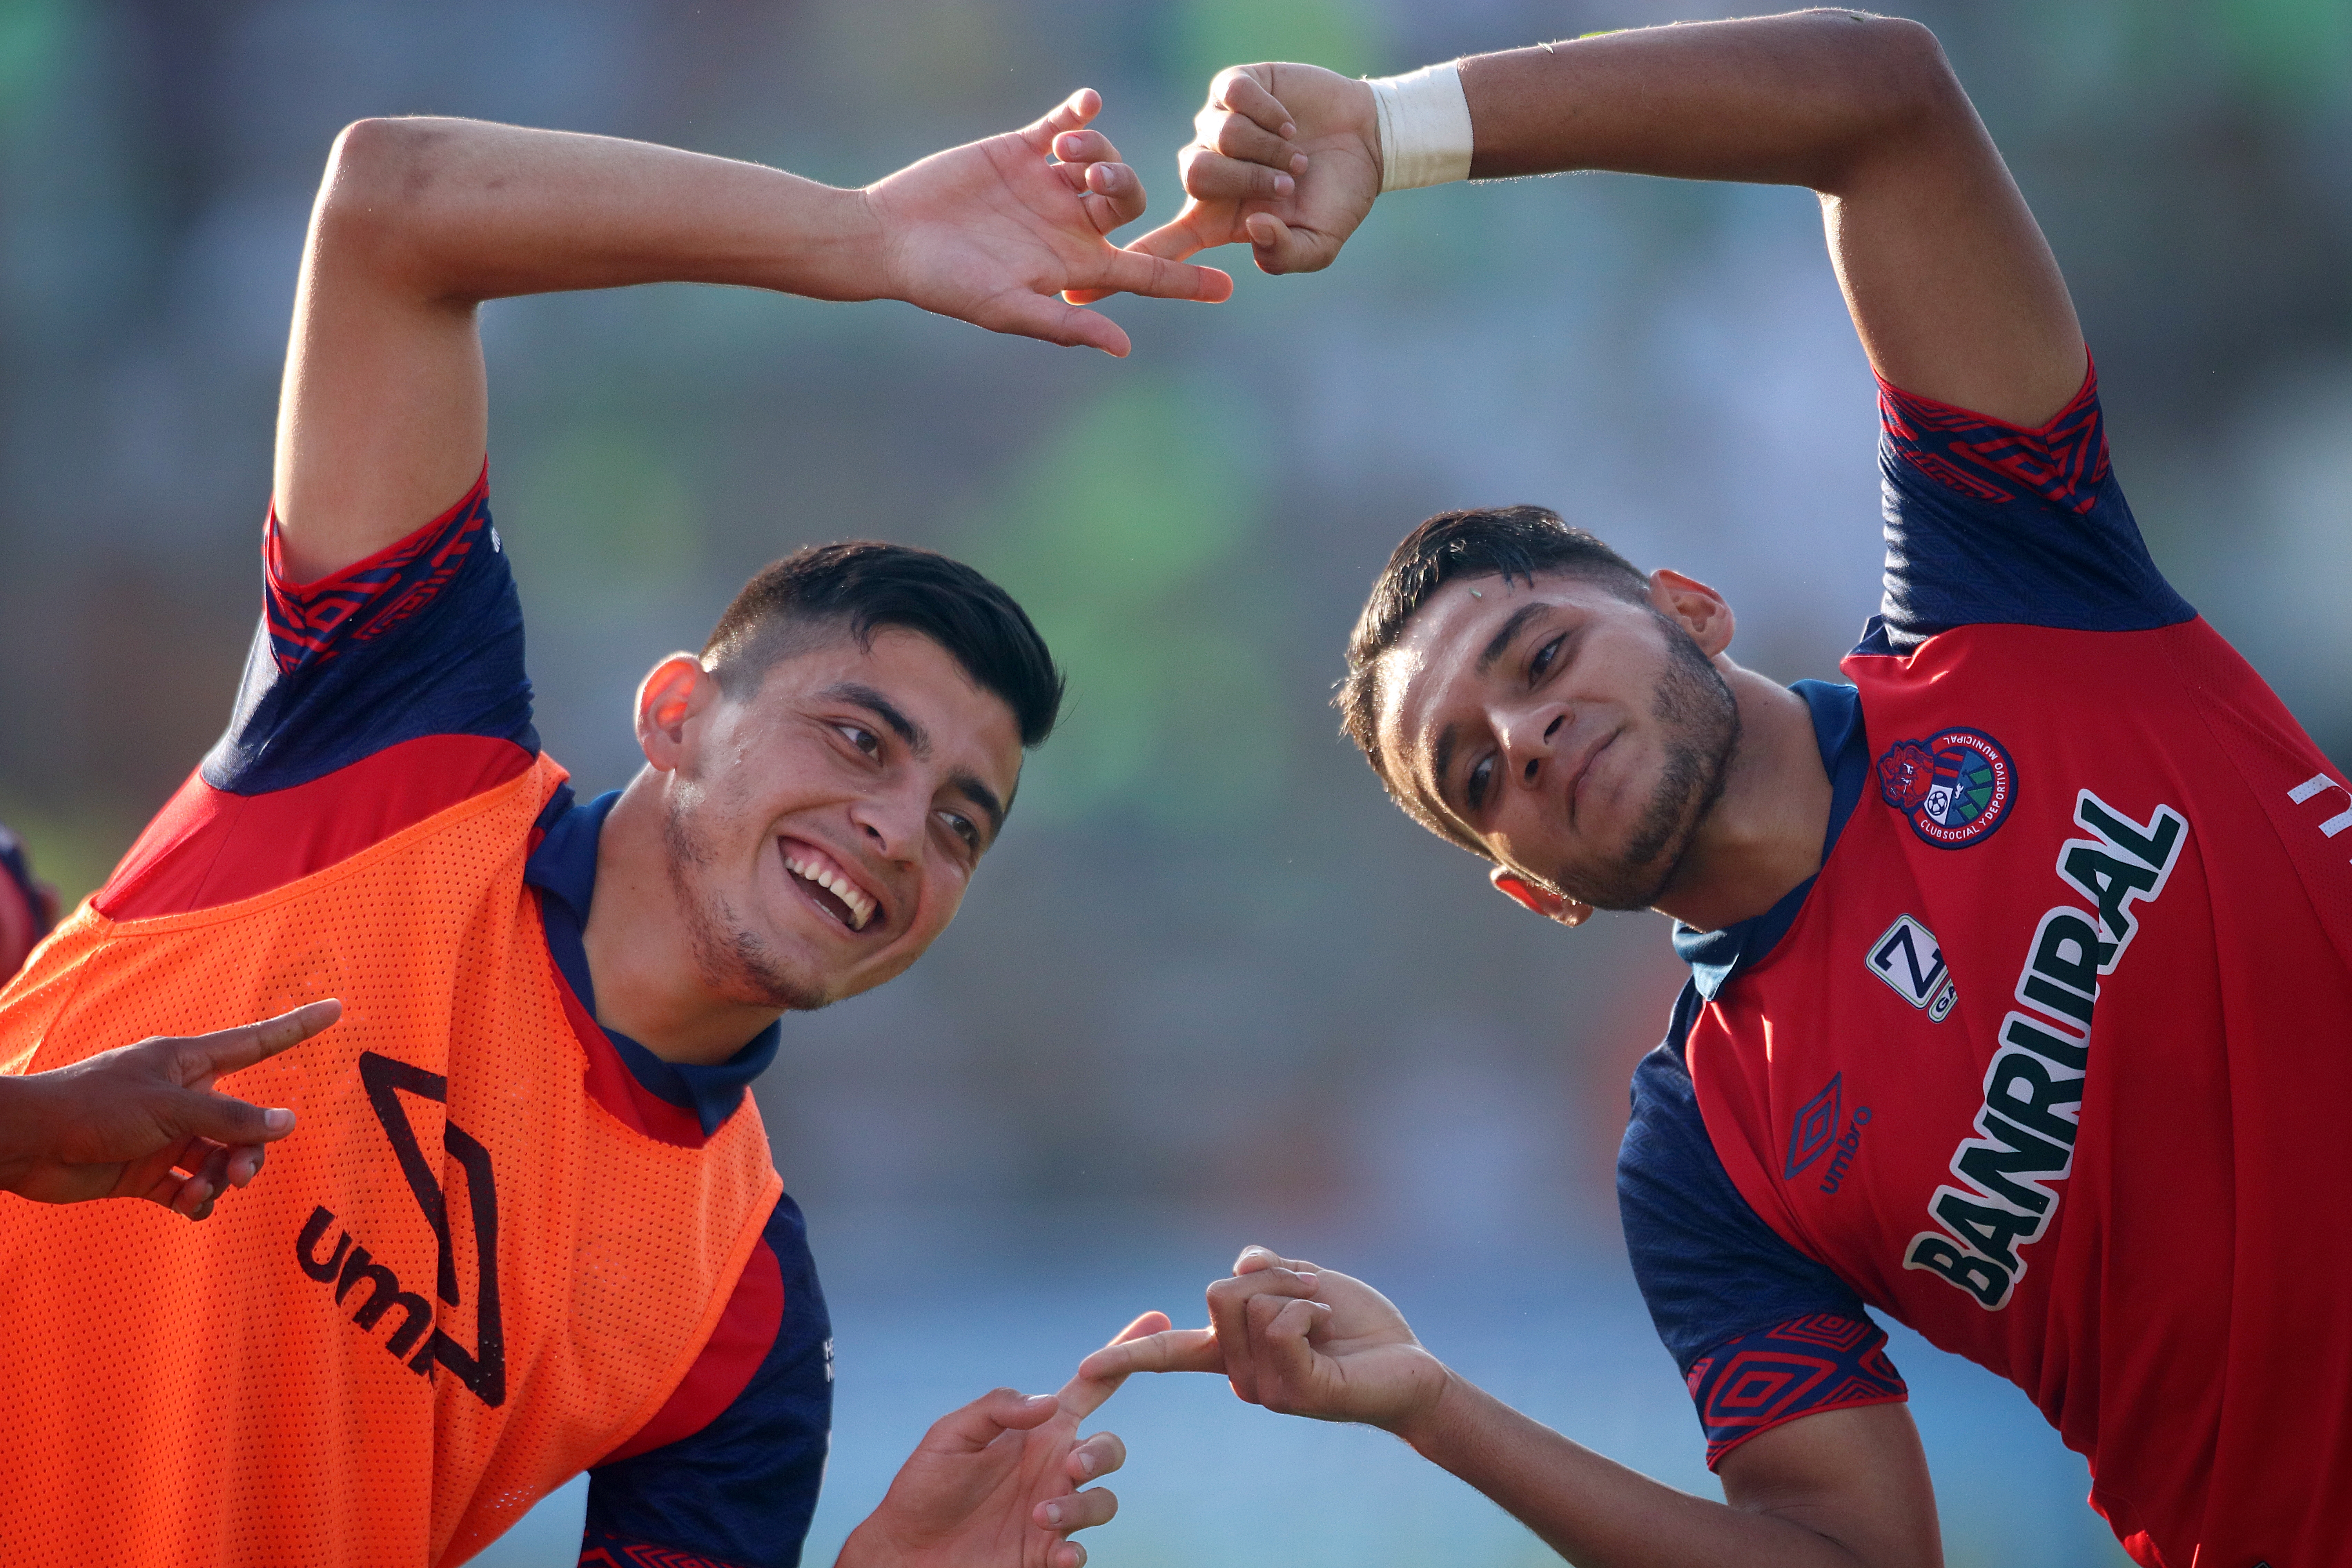  Rudy Barrientos (Derecha) disfruta del futbol y extraña regresar a la cancha. (Foto Prensa Libre: Hemeroteca PL)